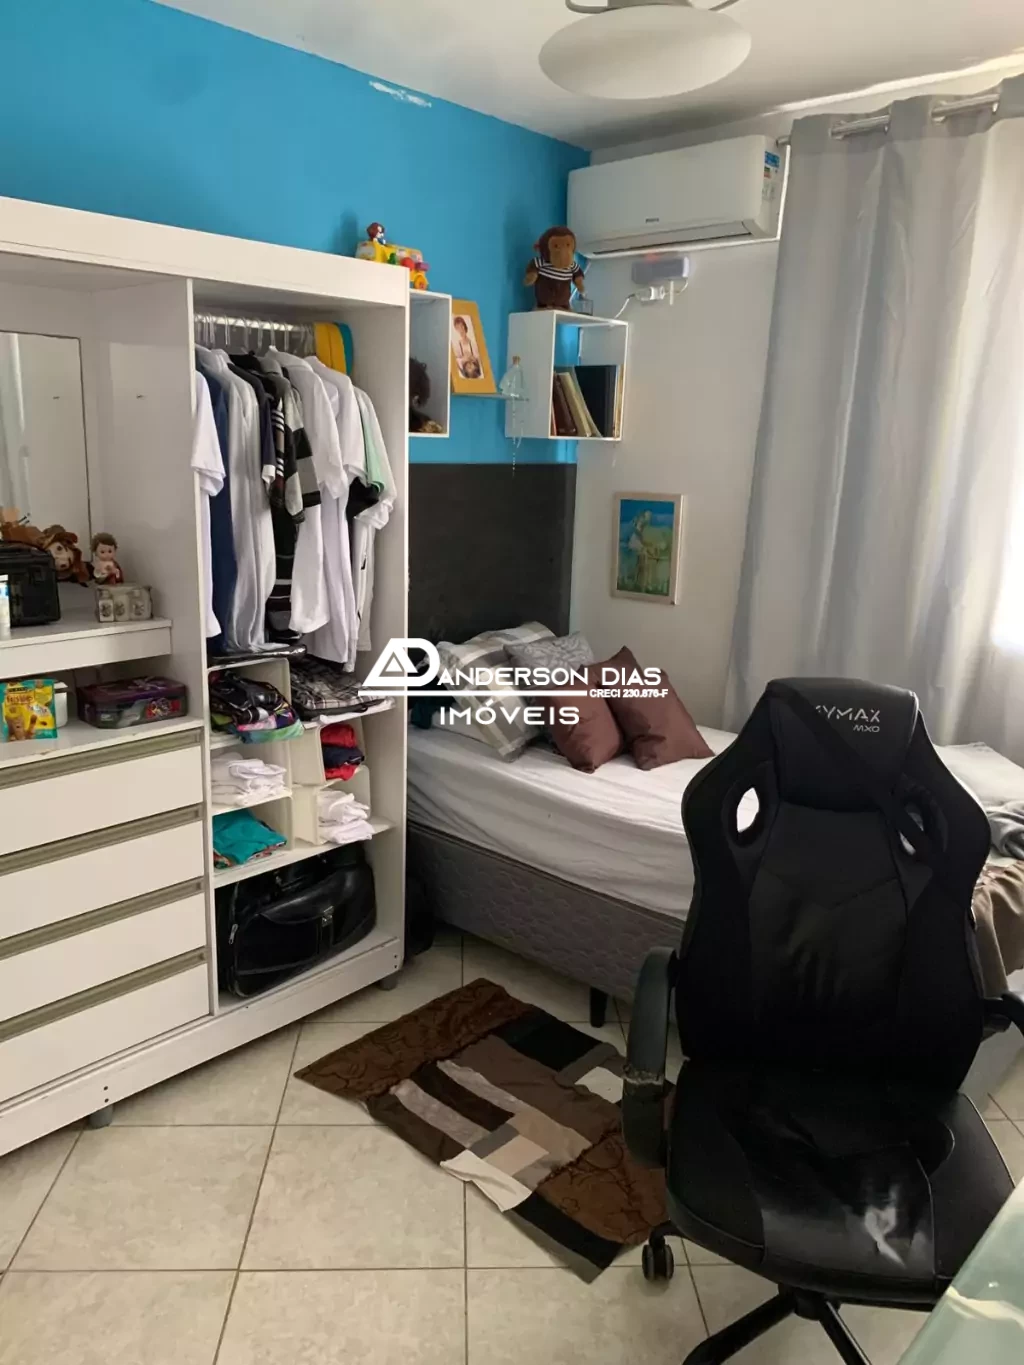 Sobrado com Piscina e 2 dormitórios a venda- 102m² por R$ 380mil- Bairro Martim de Sá- Caraguatatuba/SP